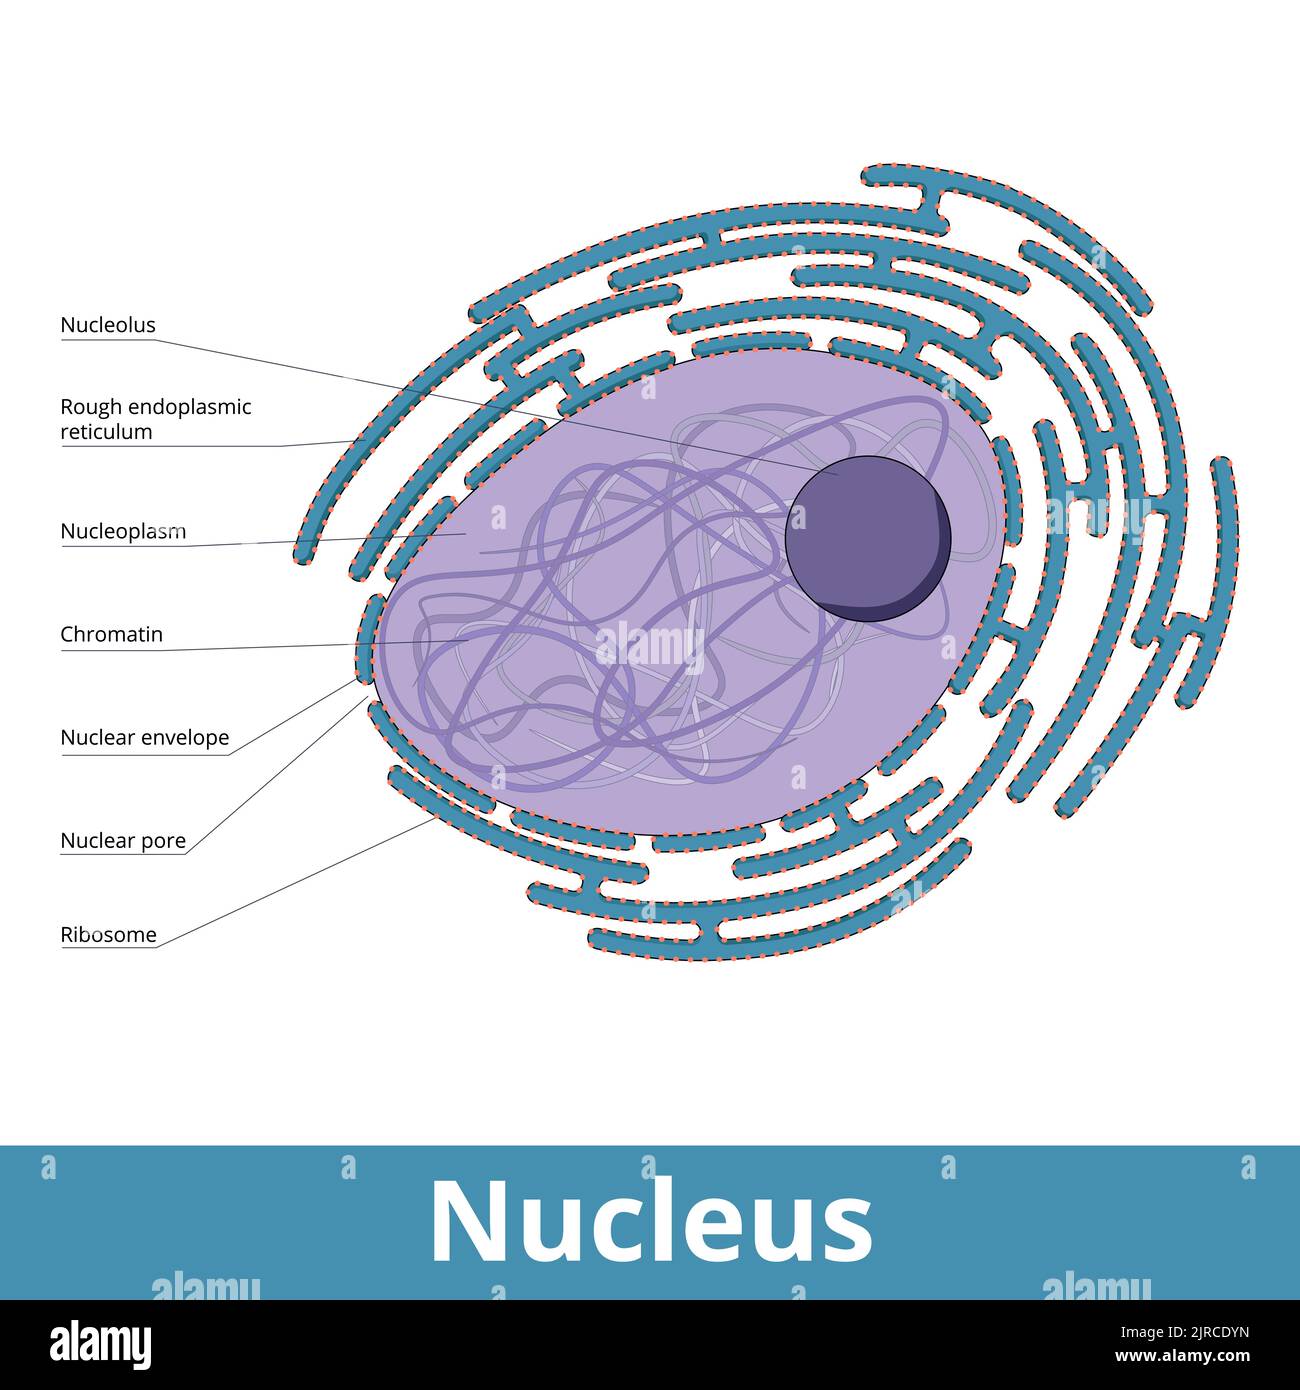 Der Kern. Ein membrangebundenes Organell mit Hülle, Nukleolus, Zellzytoplasma, Kernporen. Es ist von einem groben endoplasmatischen Retikulum umgeben. Stock Vektor